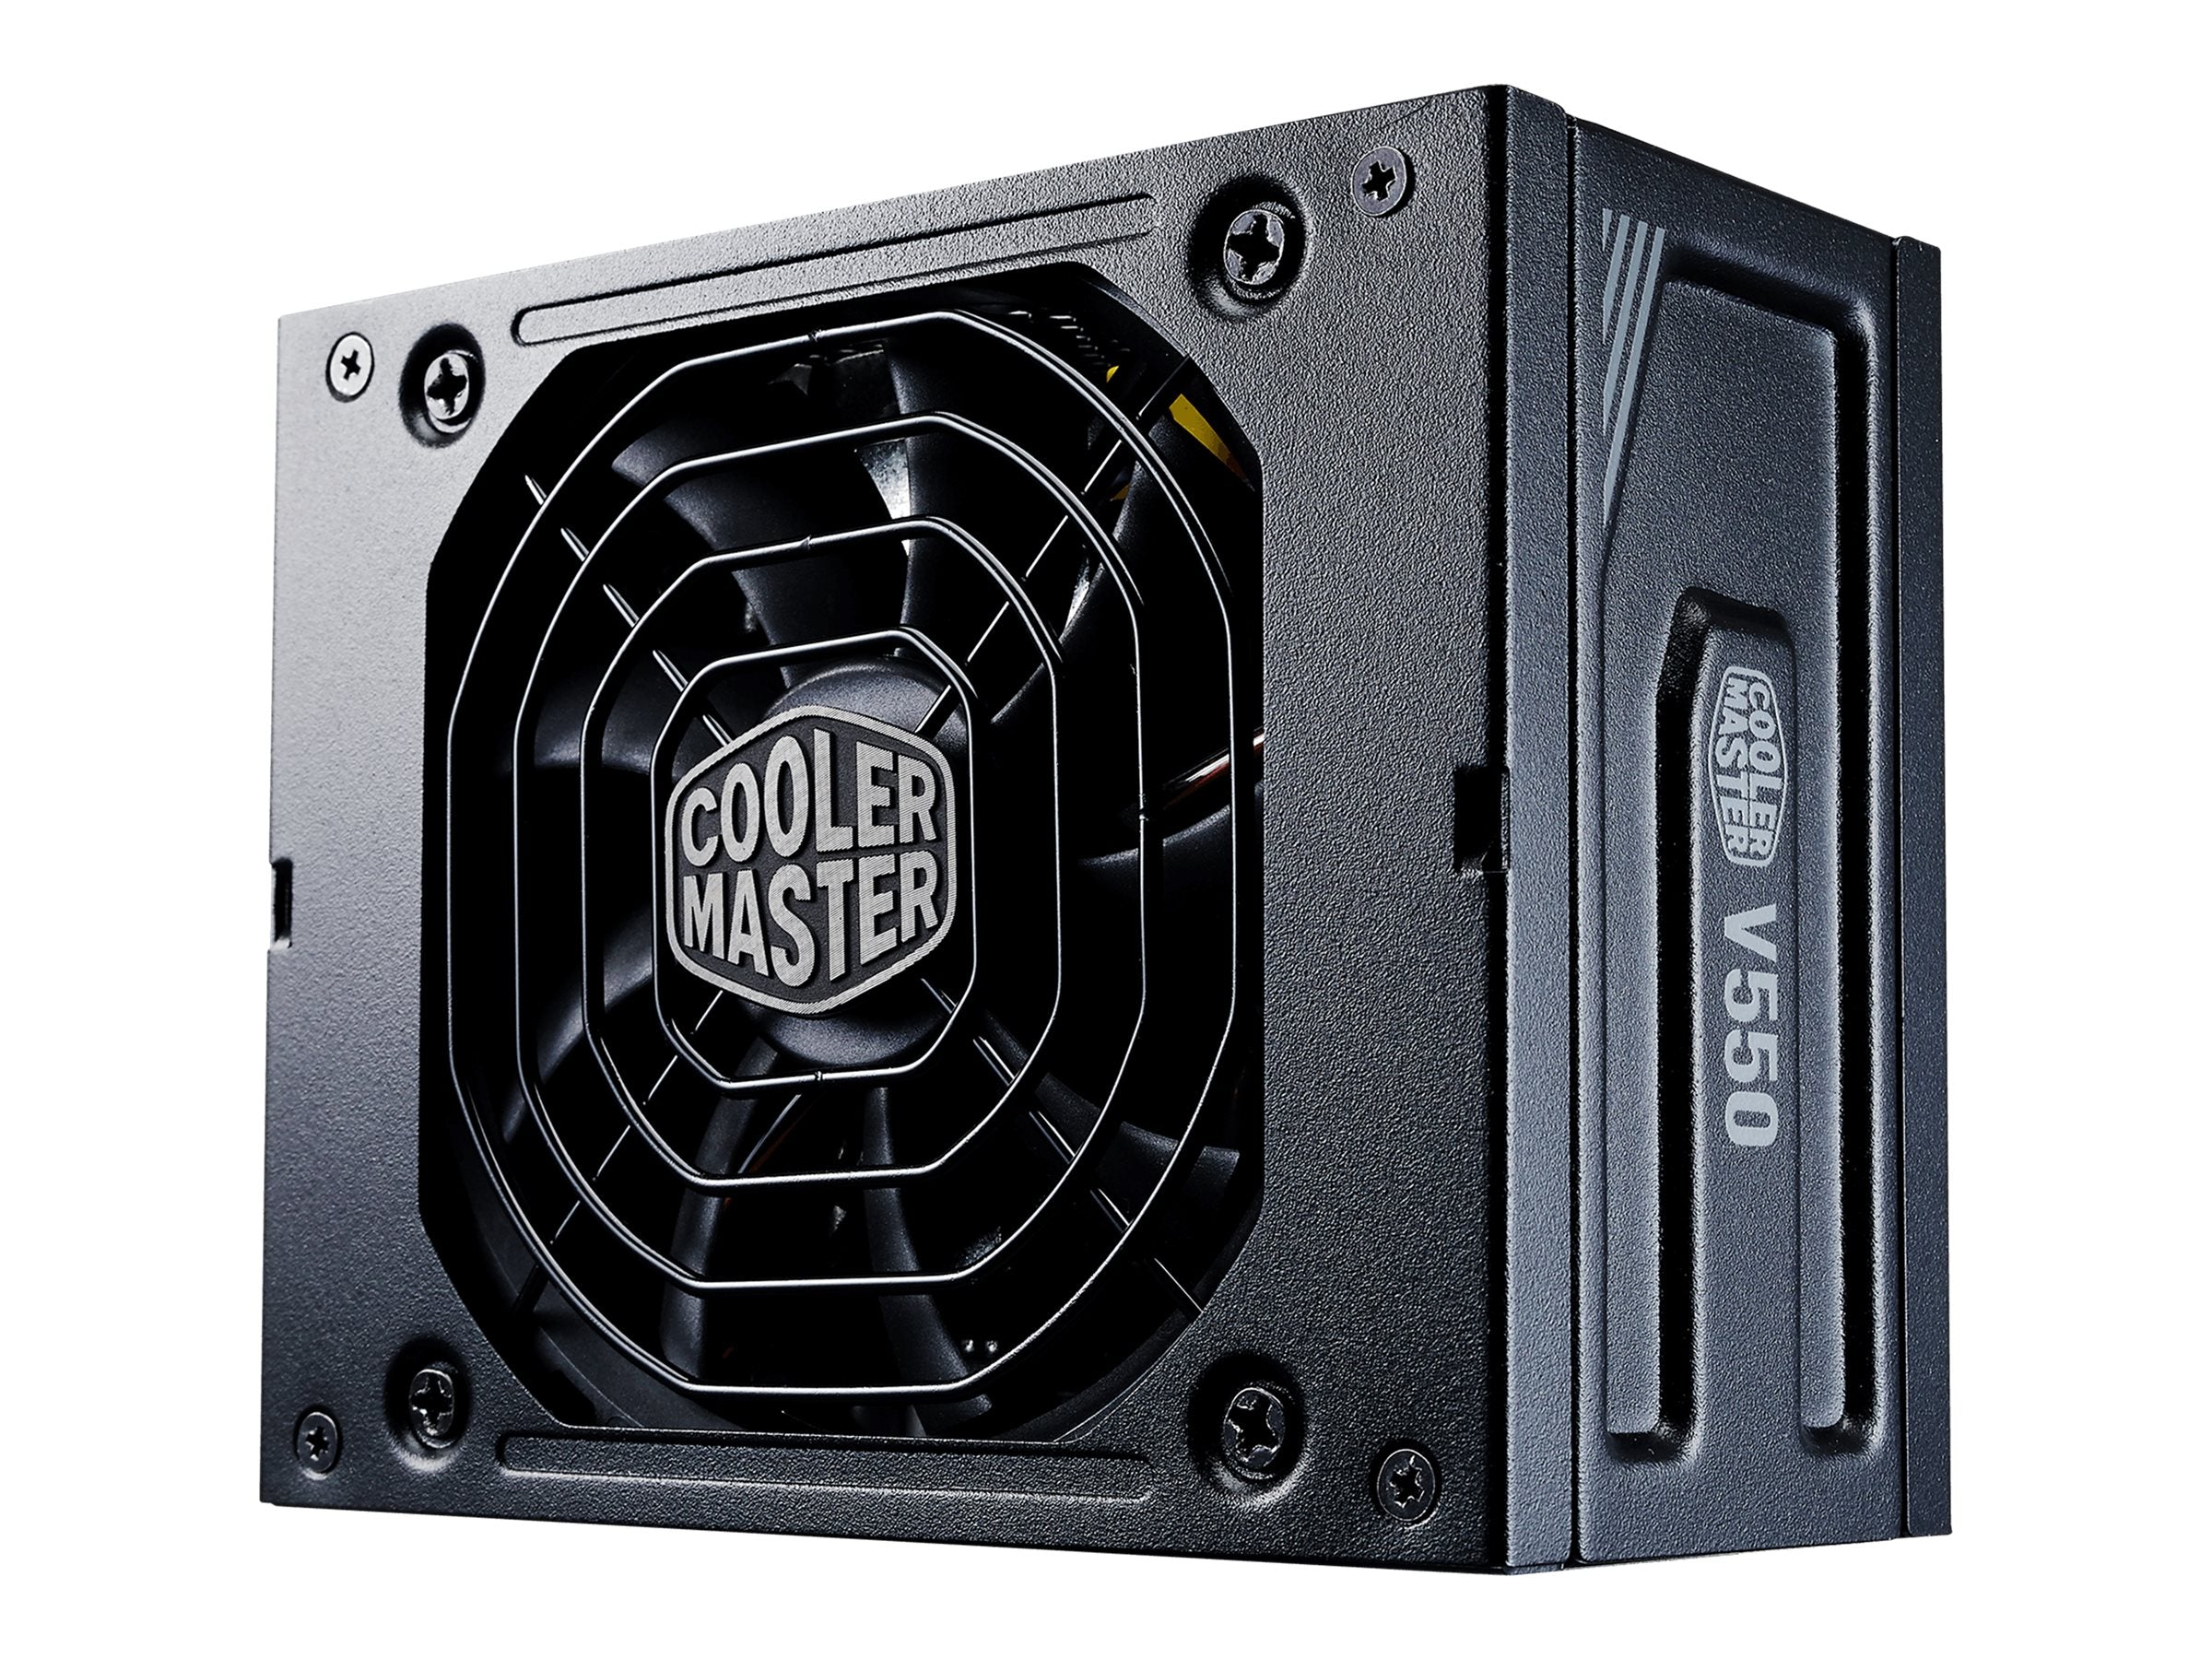 PSU Cooler Master V550 SFX Gold Cooler Master